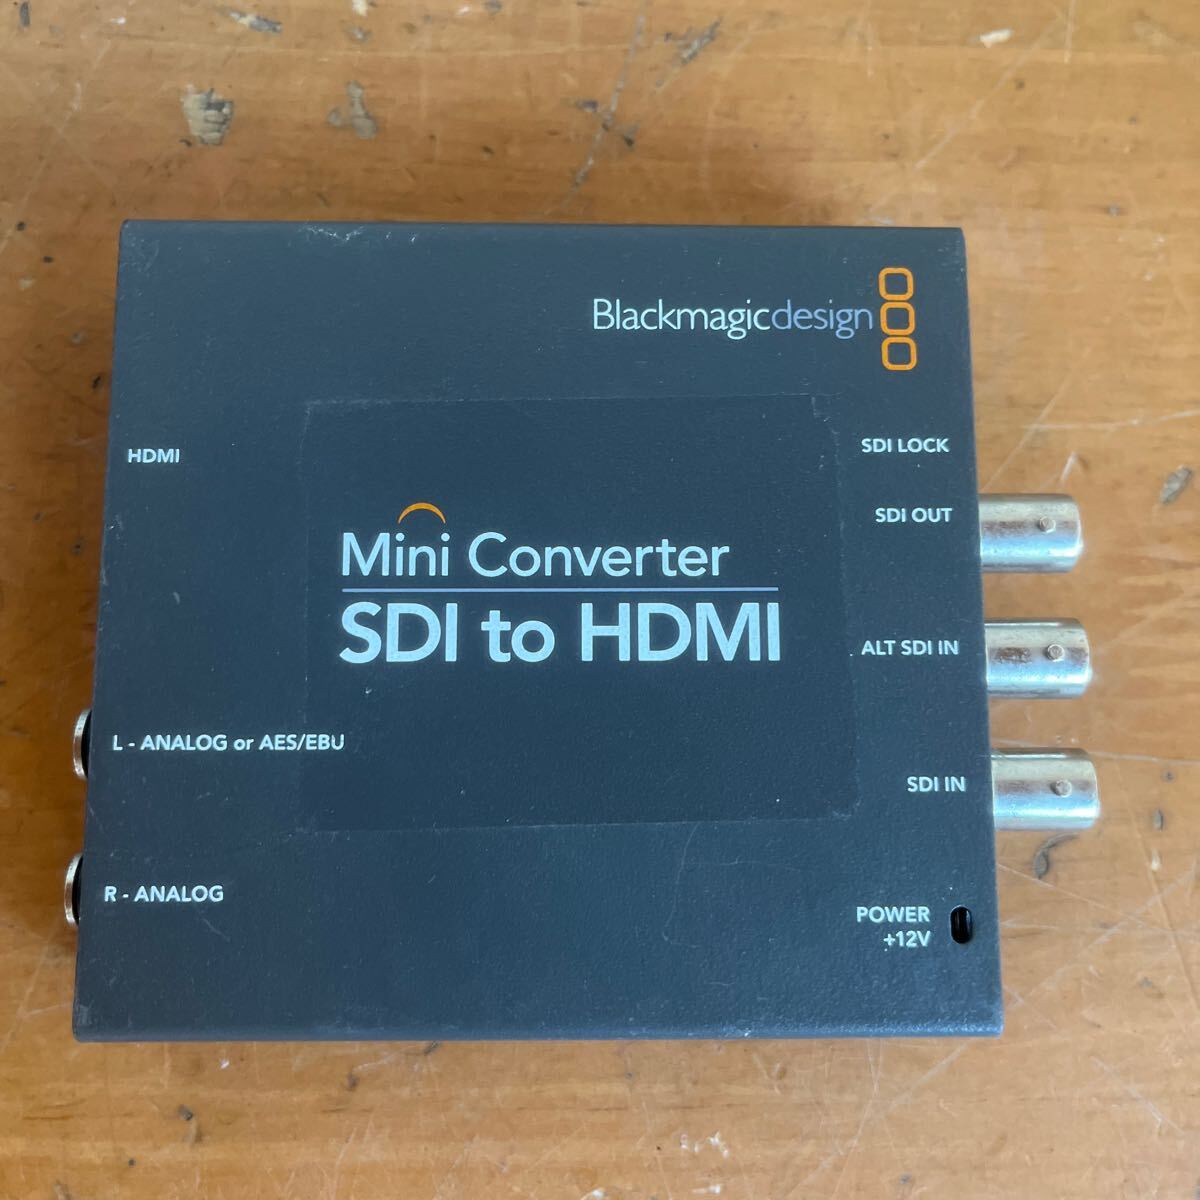 4/4 Blackmagic design Mini Converter SDI to HDMI　_画像2